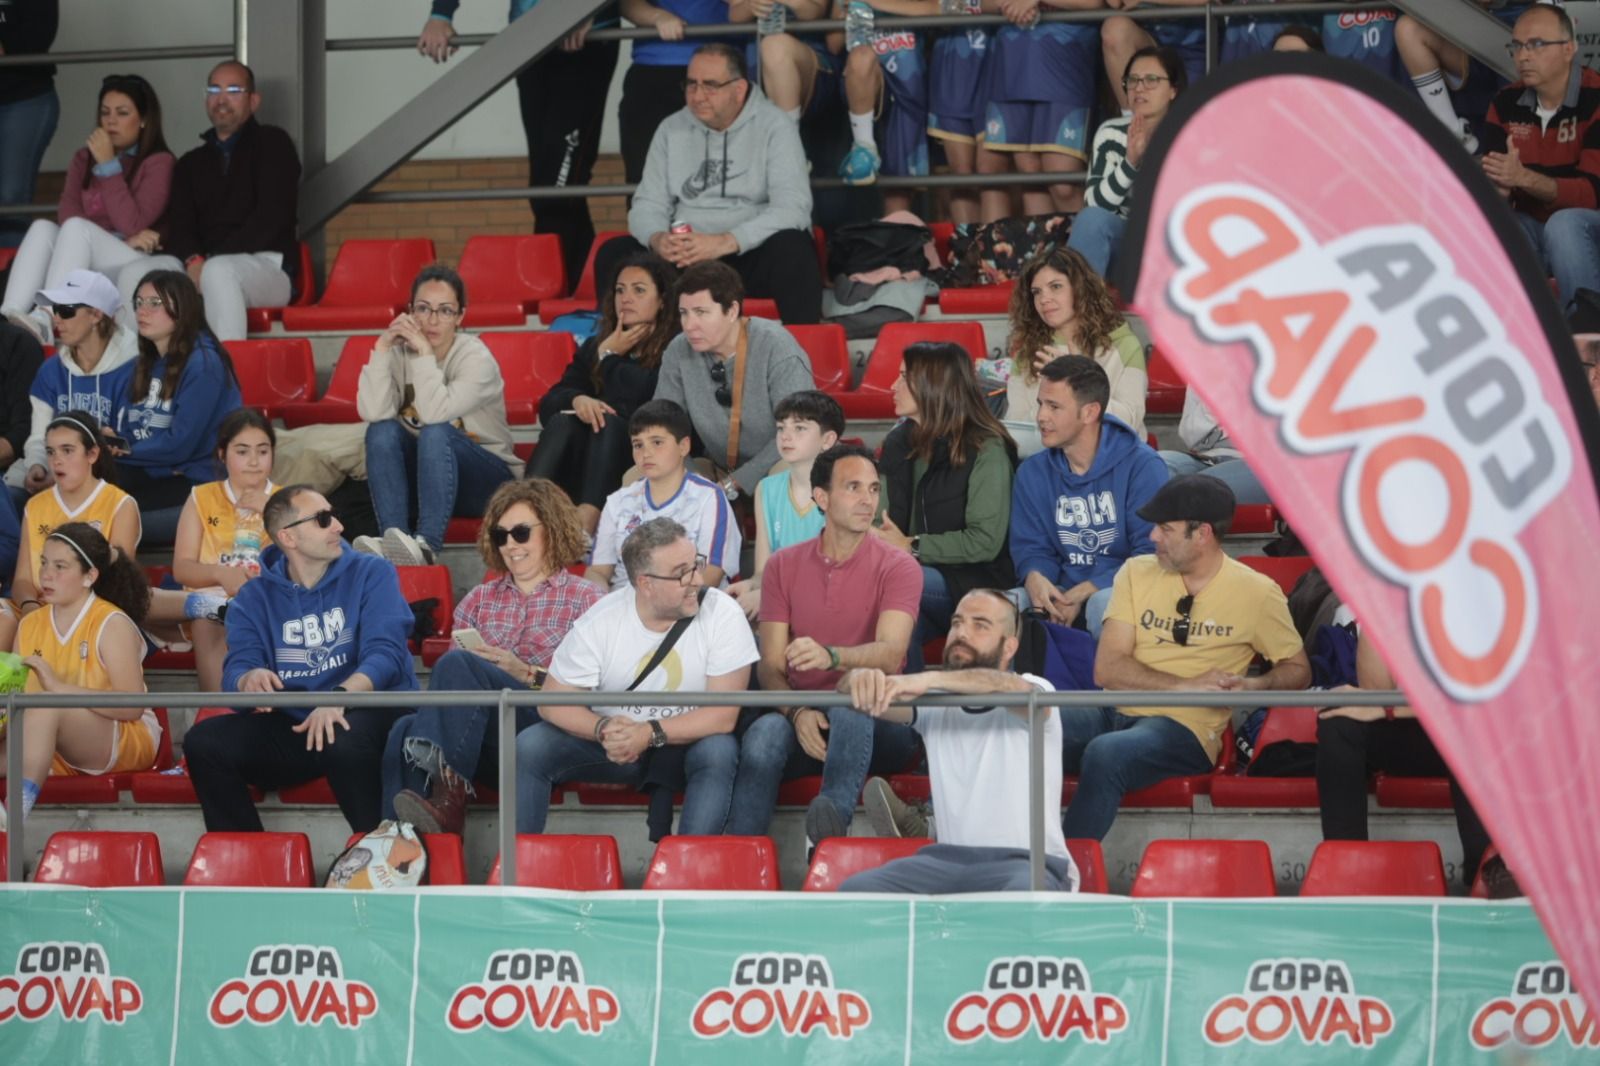 La Copa Covap en Pozoblanco: las imágenes de una jornada de deporte y vida sana